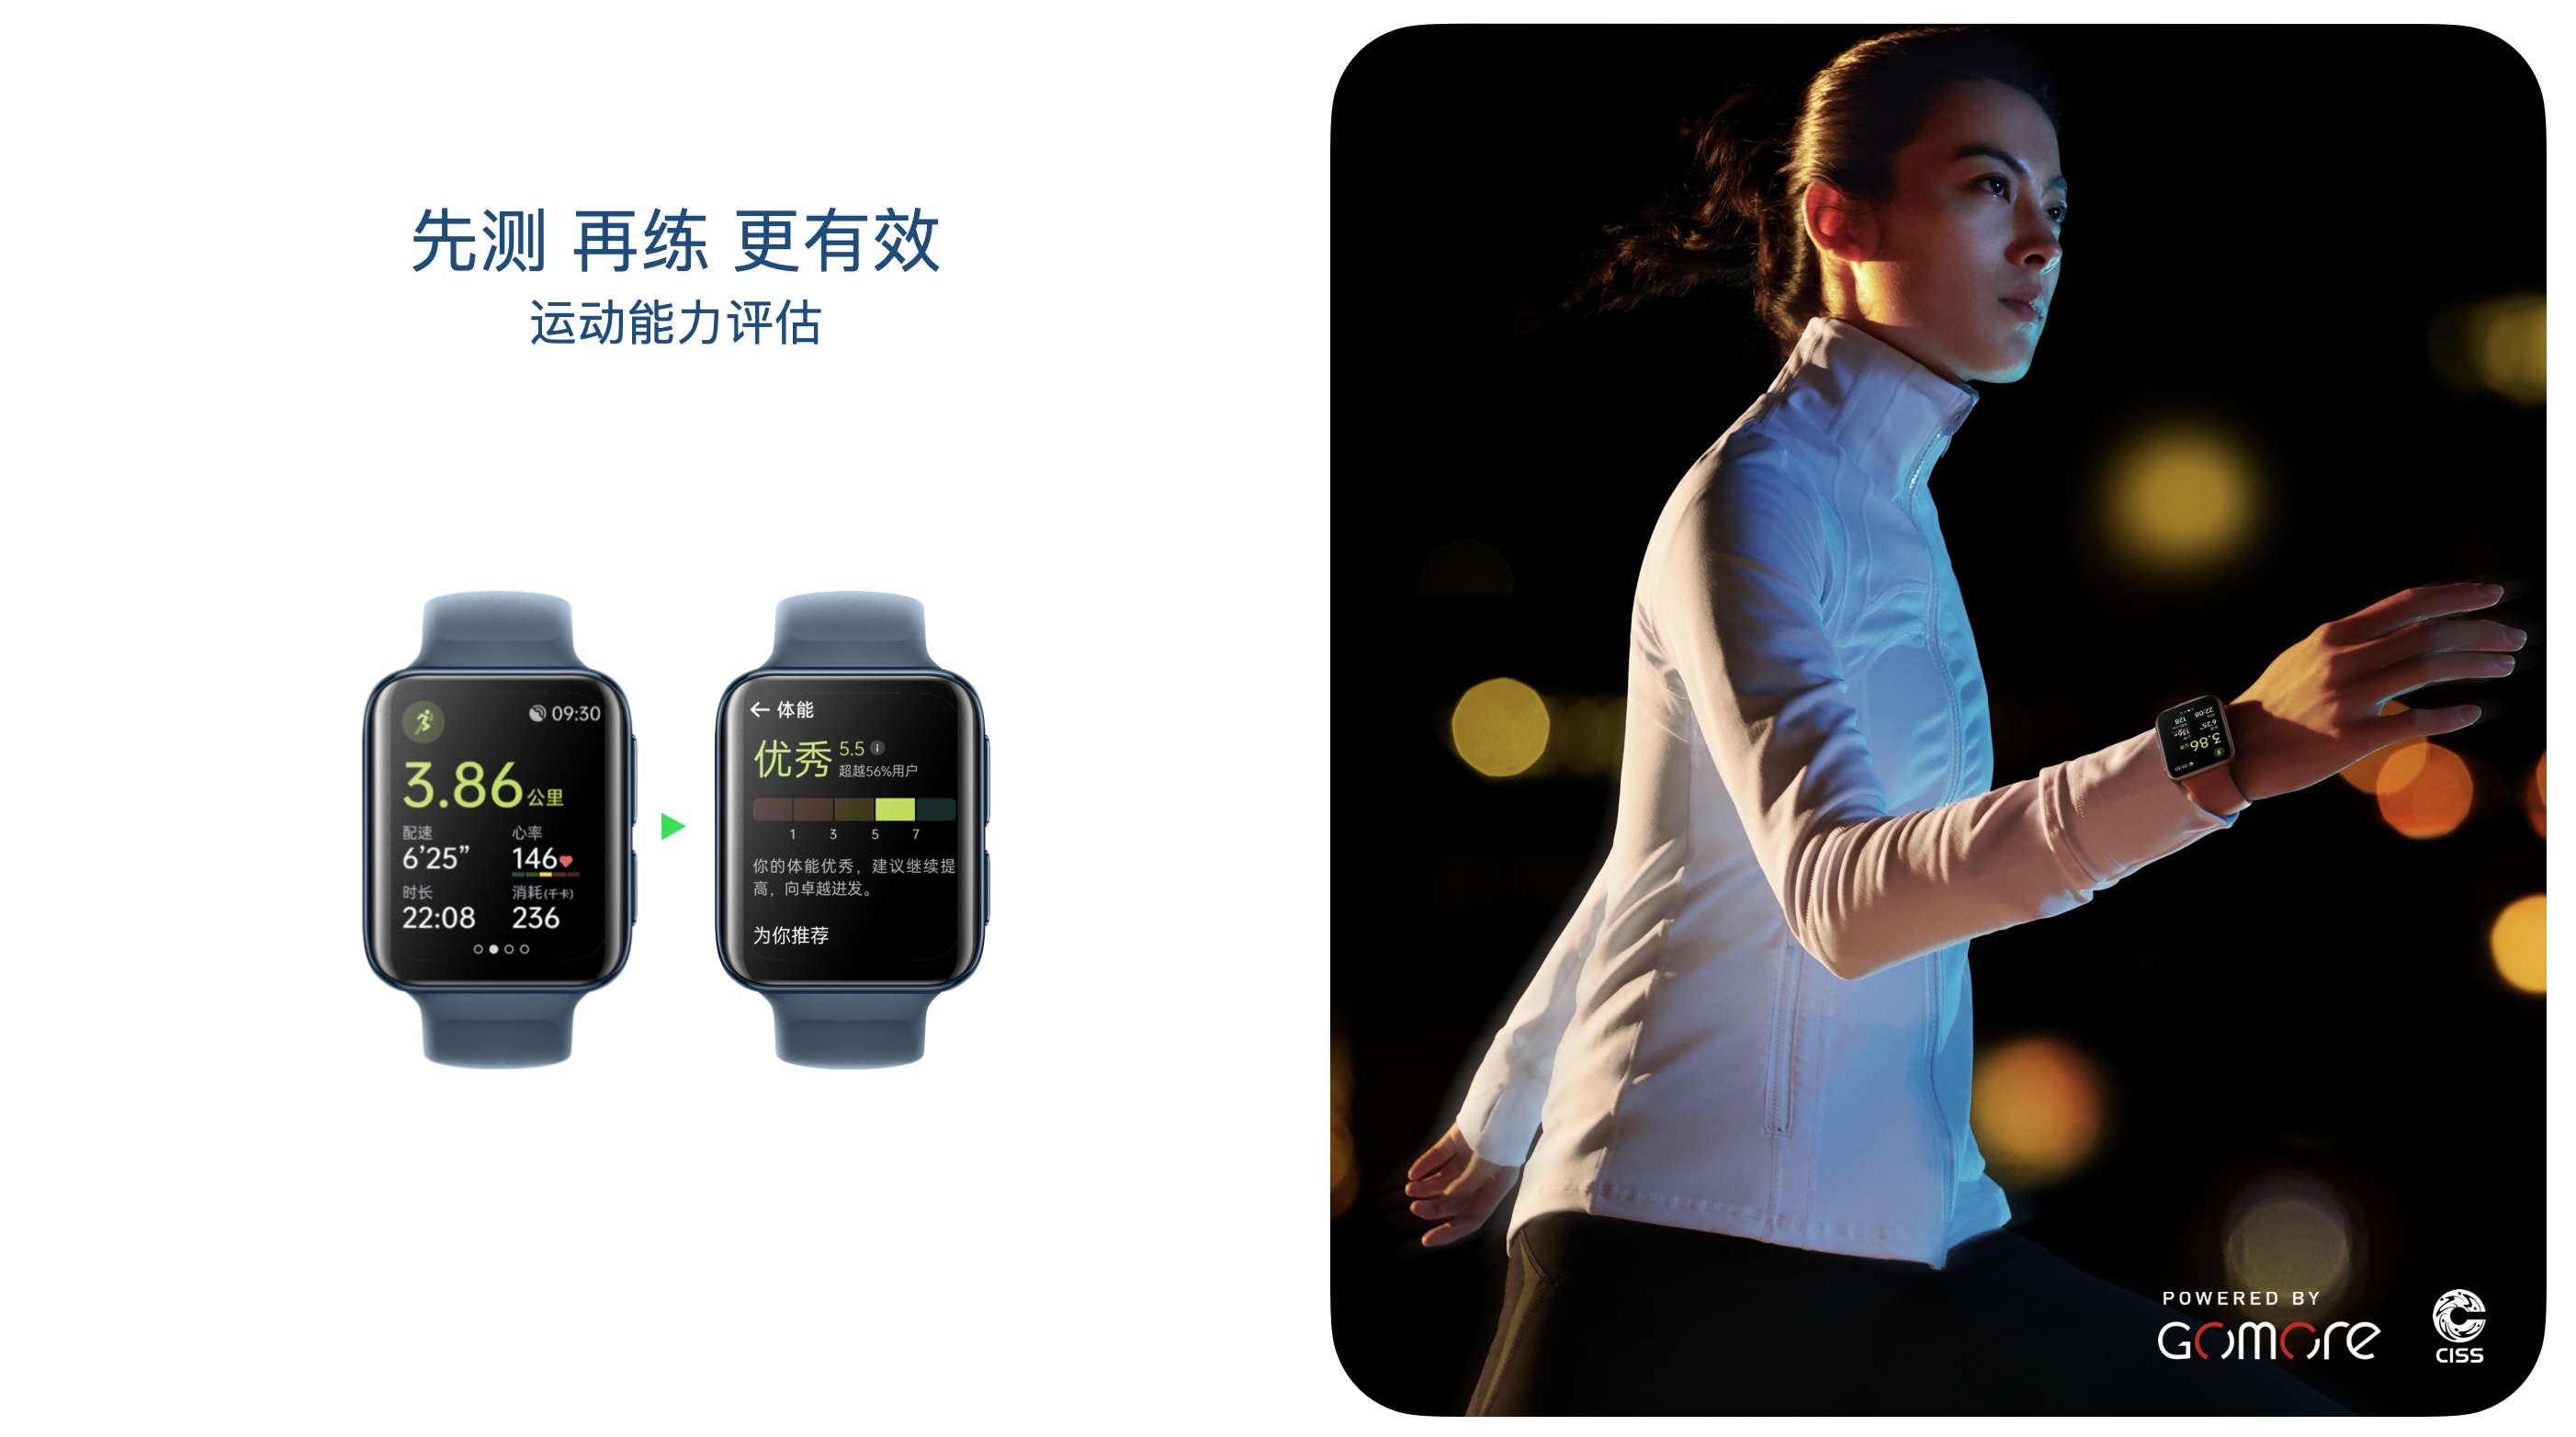 OPPO Watch 2系列正式發布打造新一代安卓全智能手錶旗艦